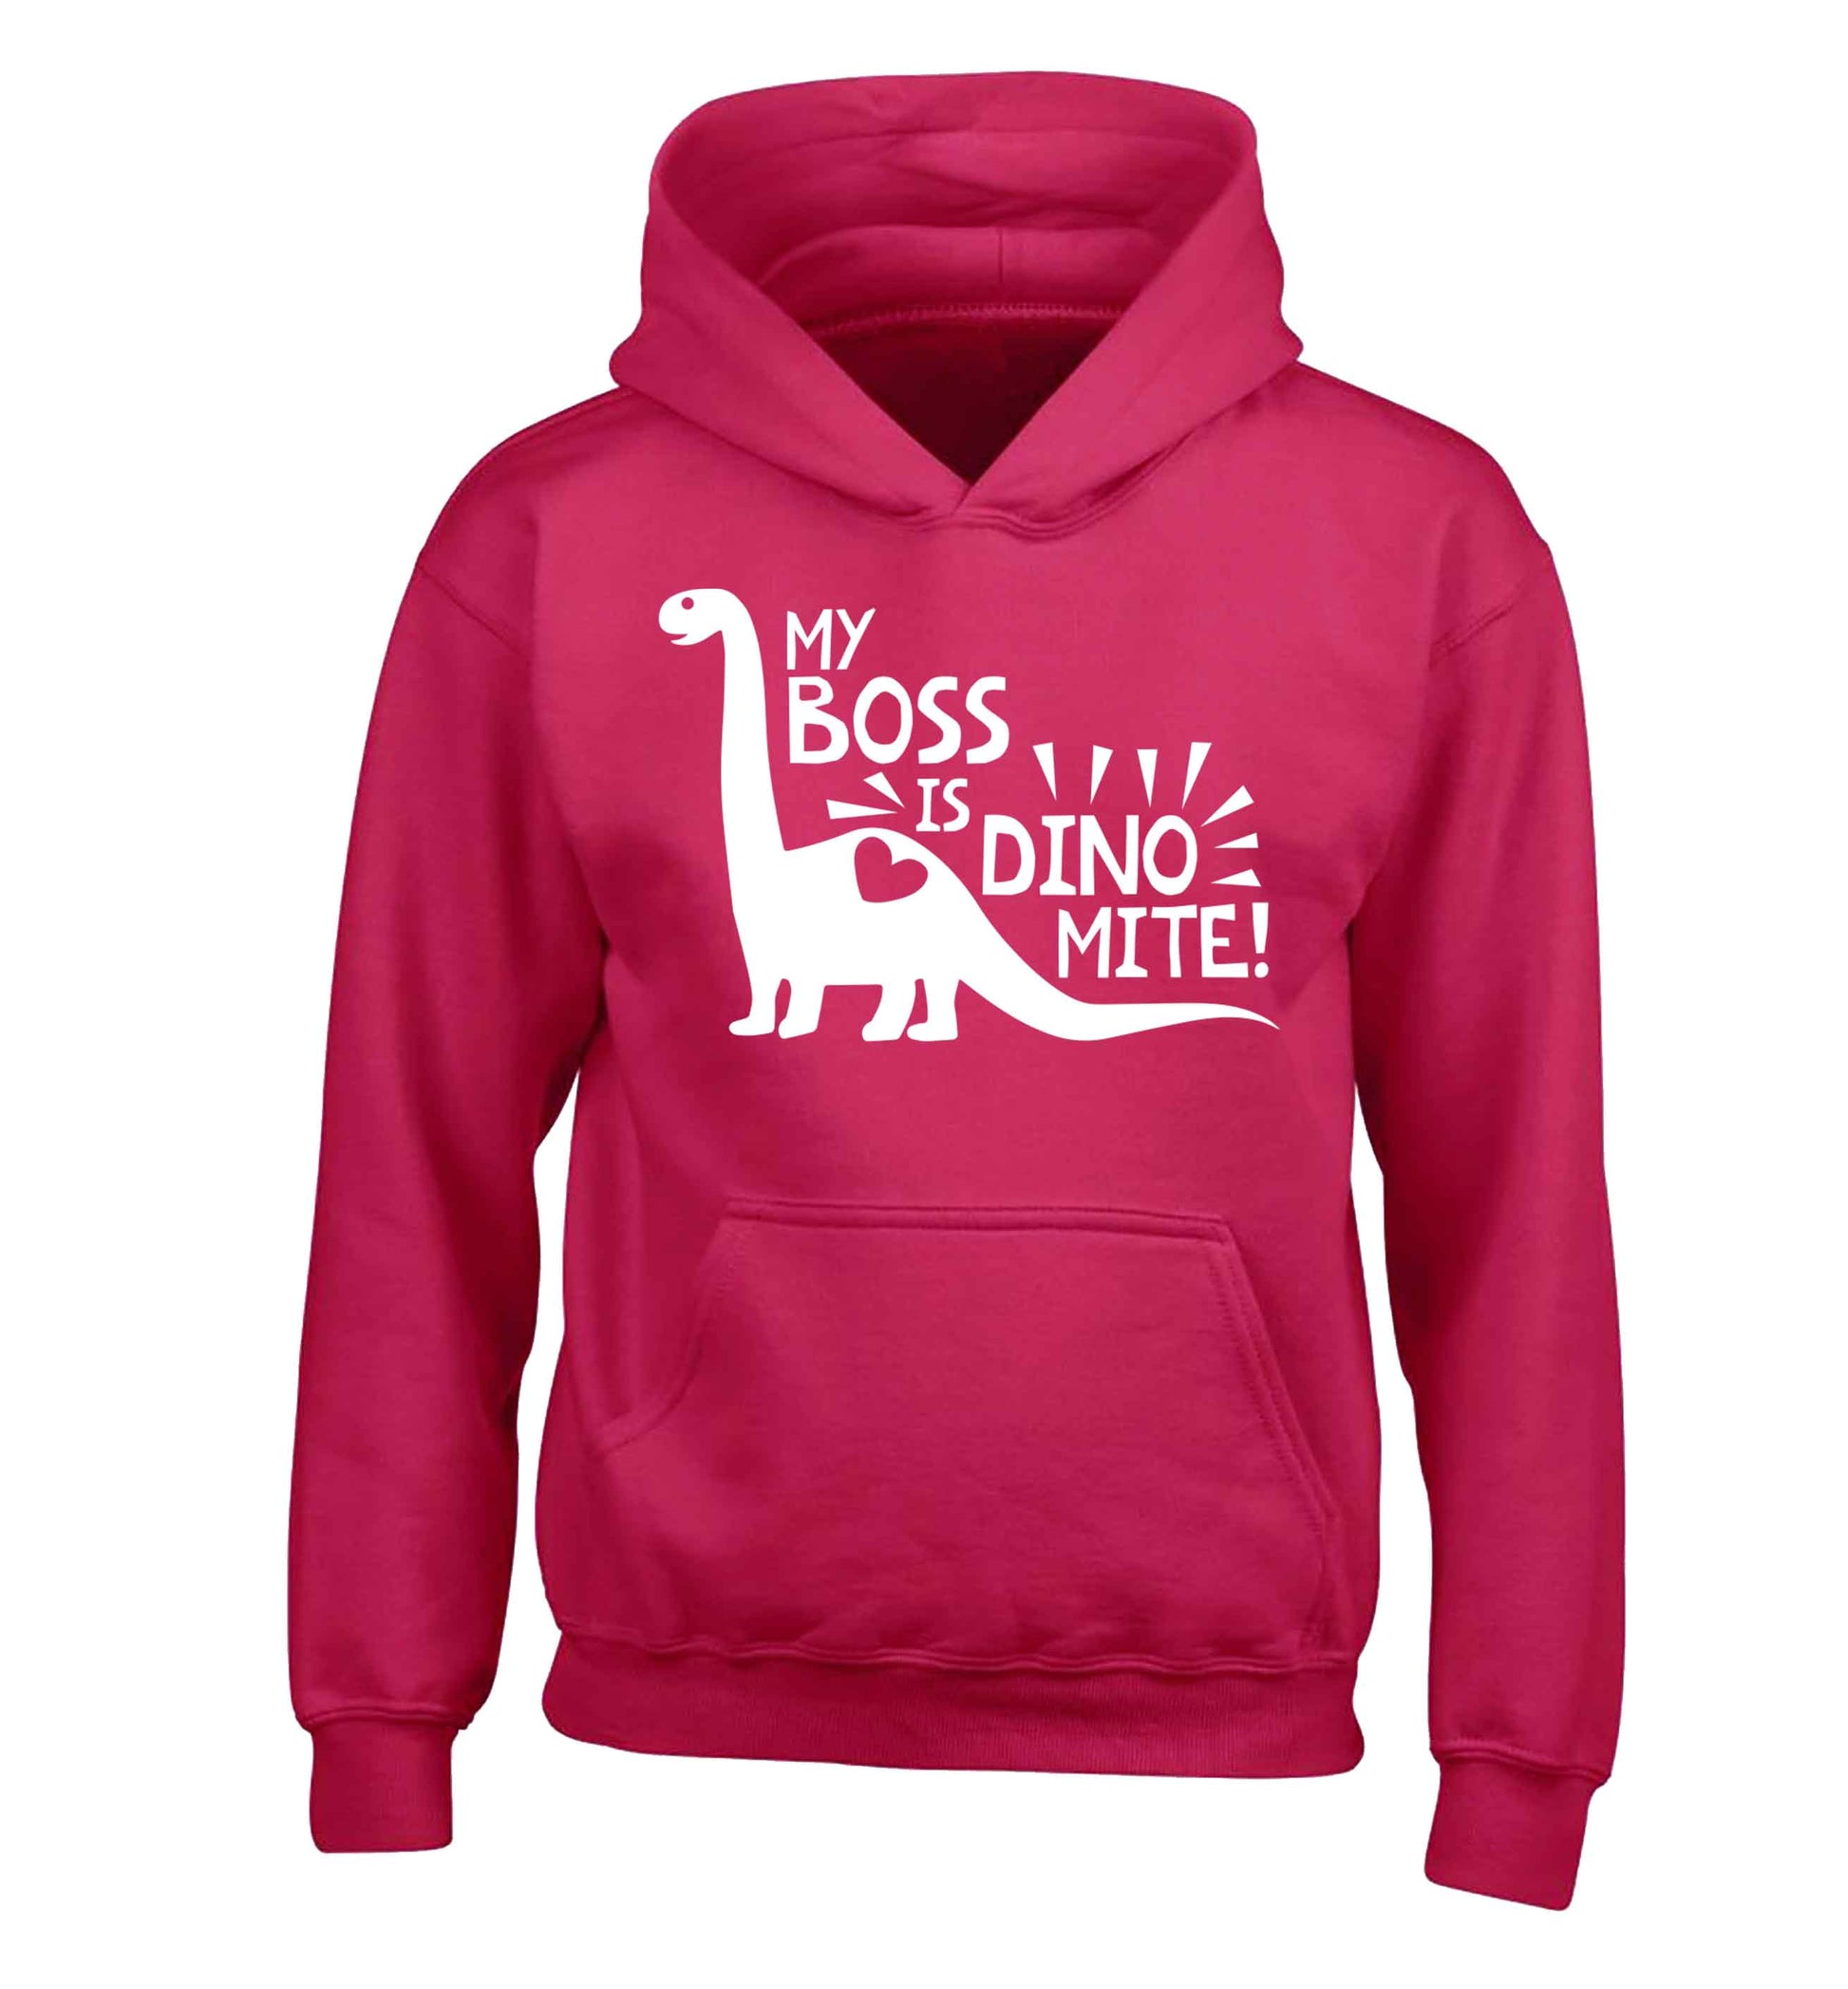 My boss is dinomite! children's pink hoodie 12-13 Years